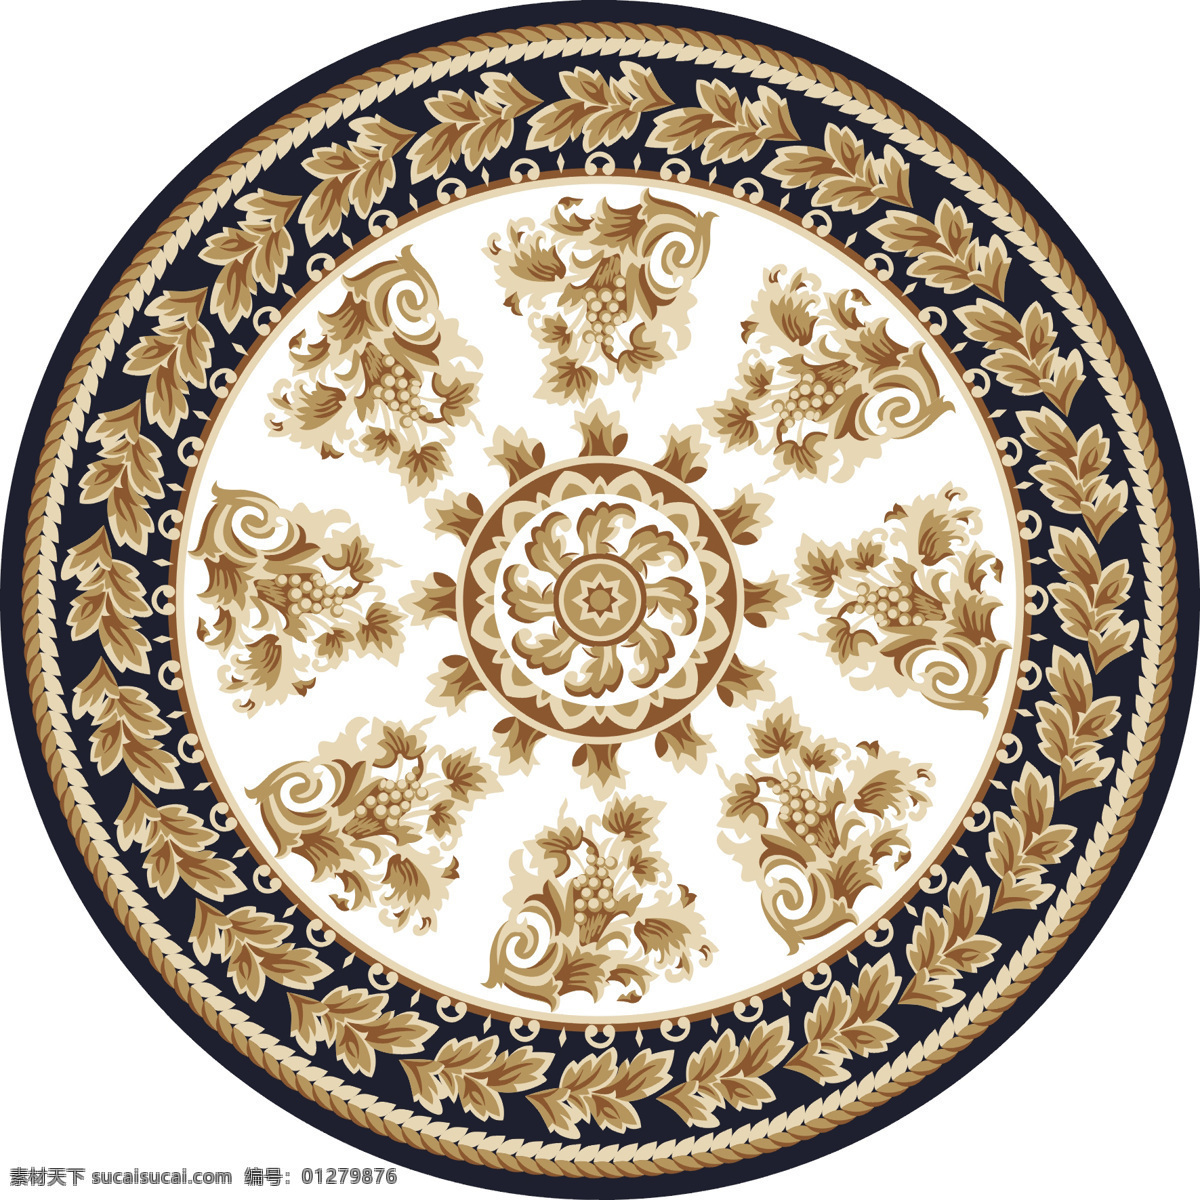 圆形地毯 抽象地毯 地毯 欧式地毯 北欧地毯 彩印地毯 文化艺术 传统文化